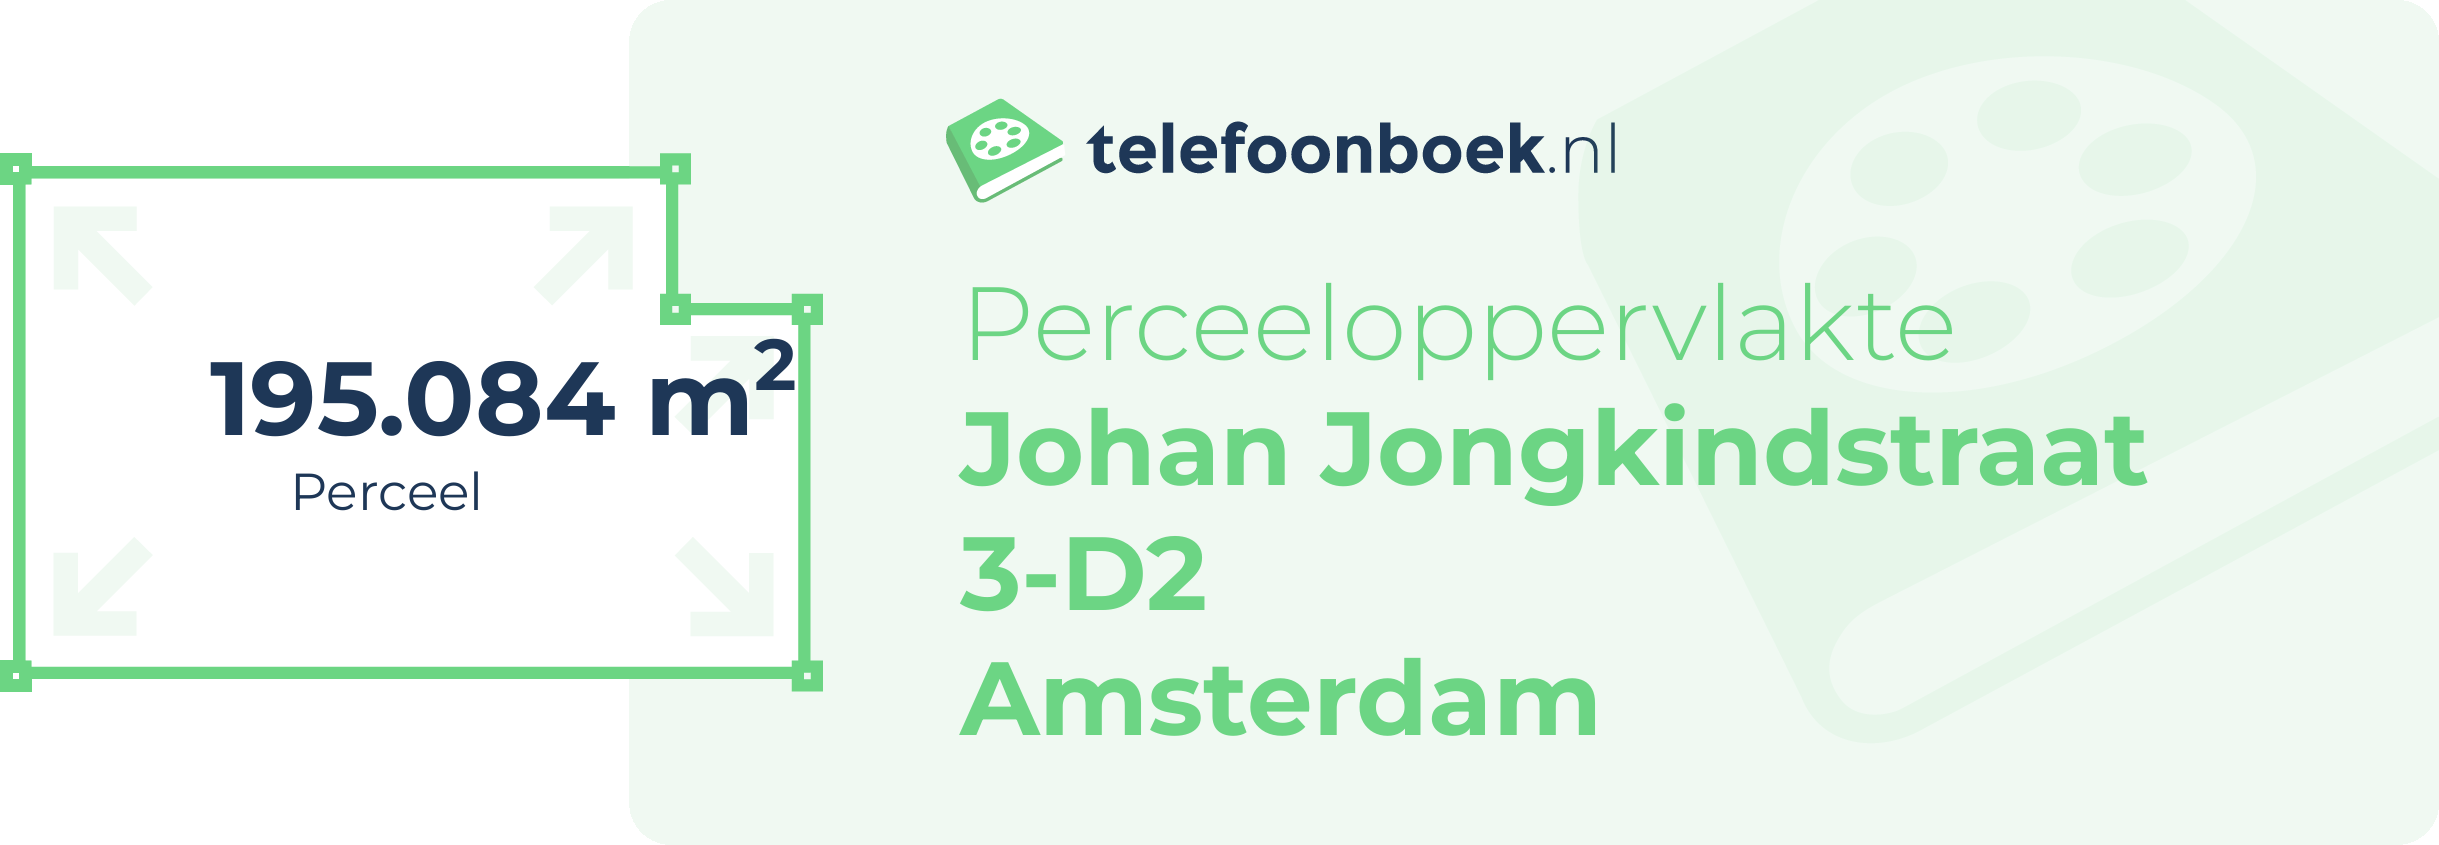 Perceeloppervlakte Johan Jongkindstraat 3-D2 Amsterdam